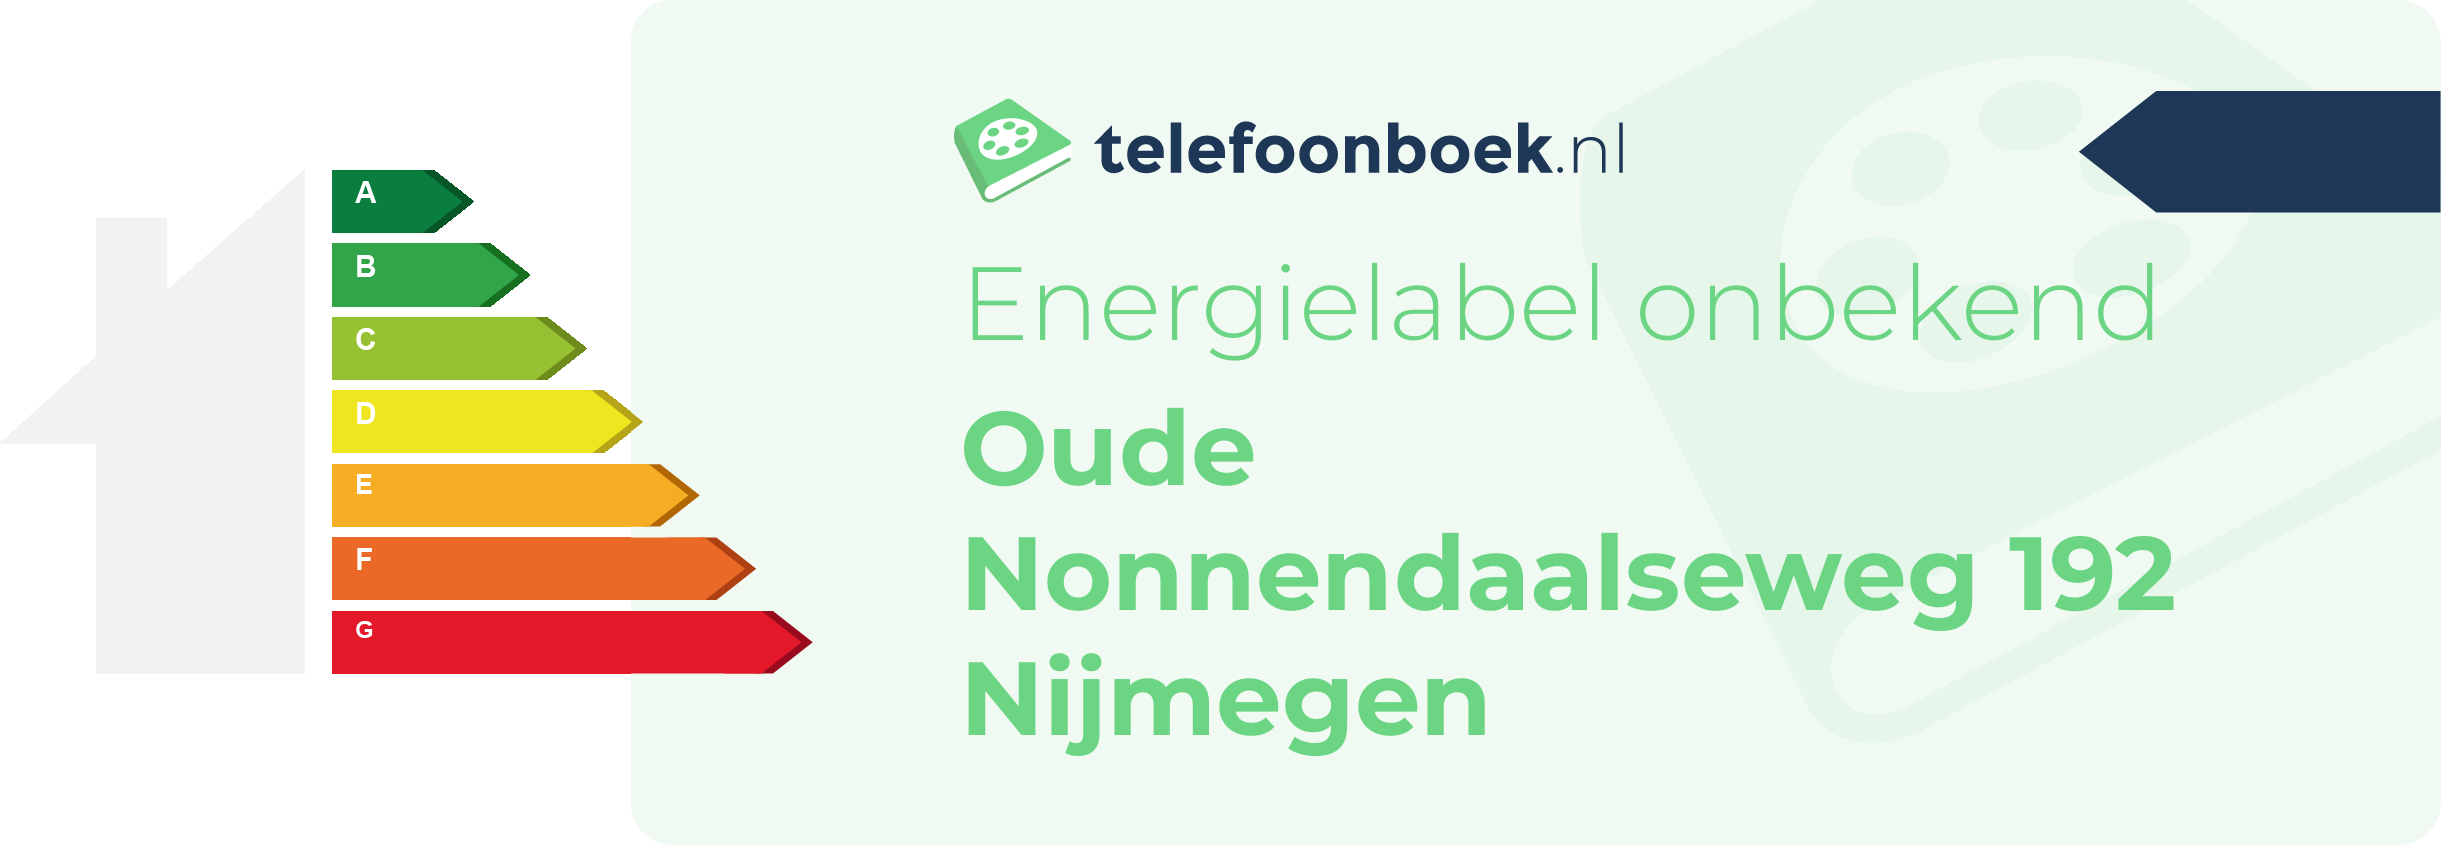 Energielabel Oude Nonnendaalseweg 192 Nijmegen